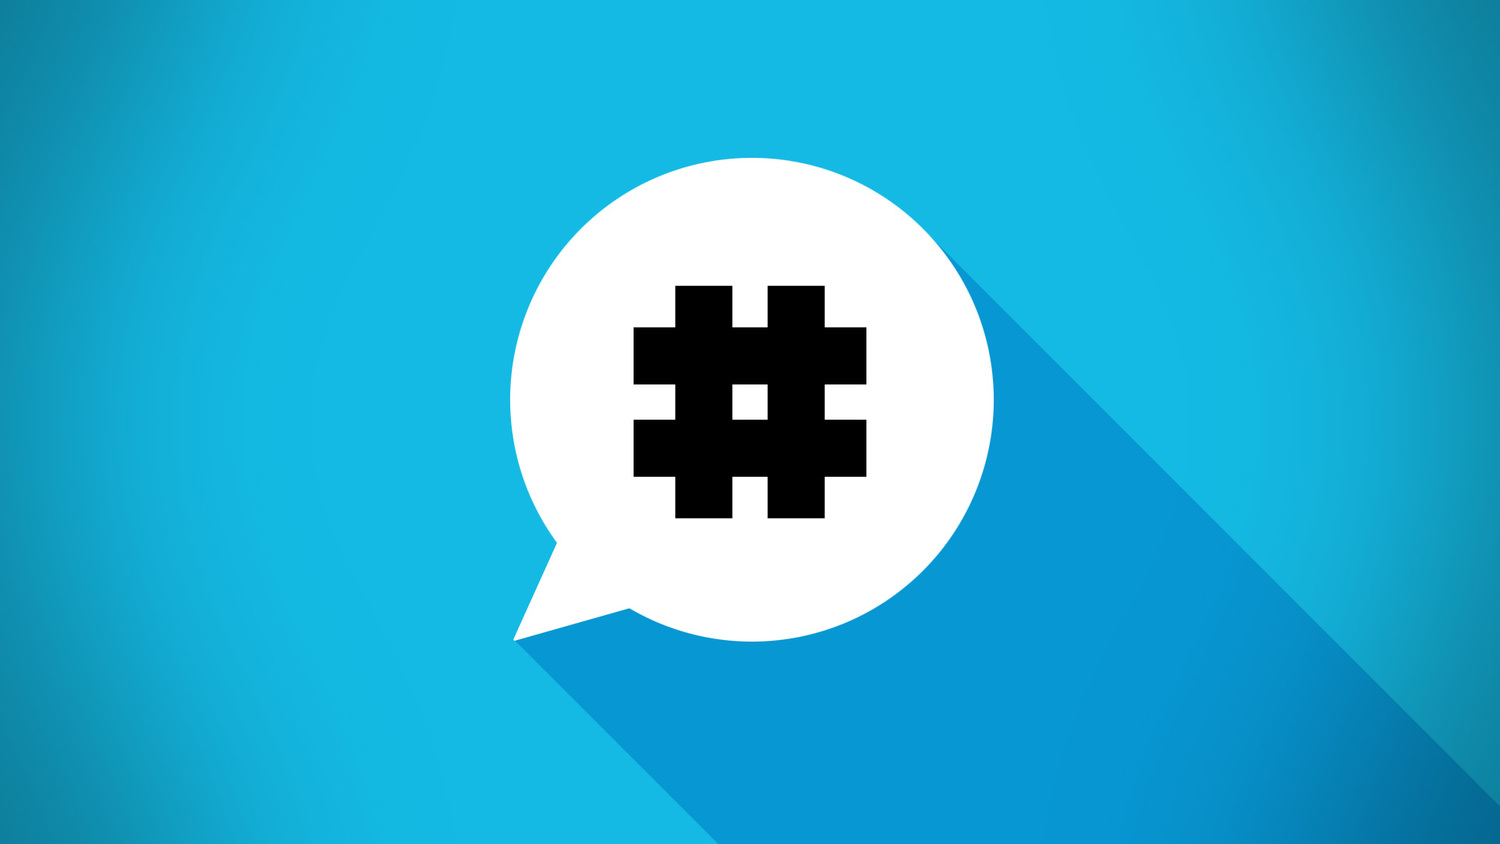 Hashtags ¿por qué usarlos? Tips y consejos